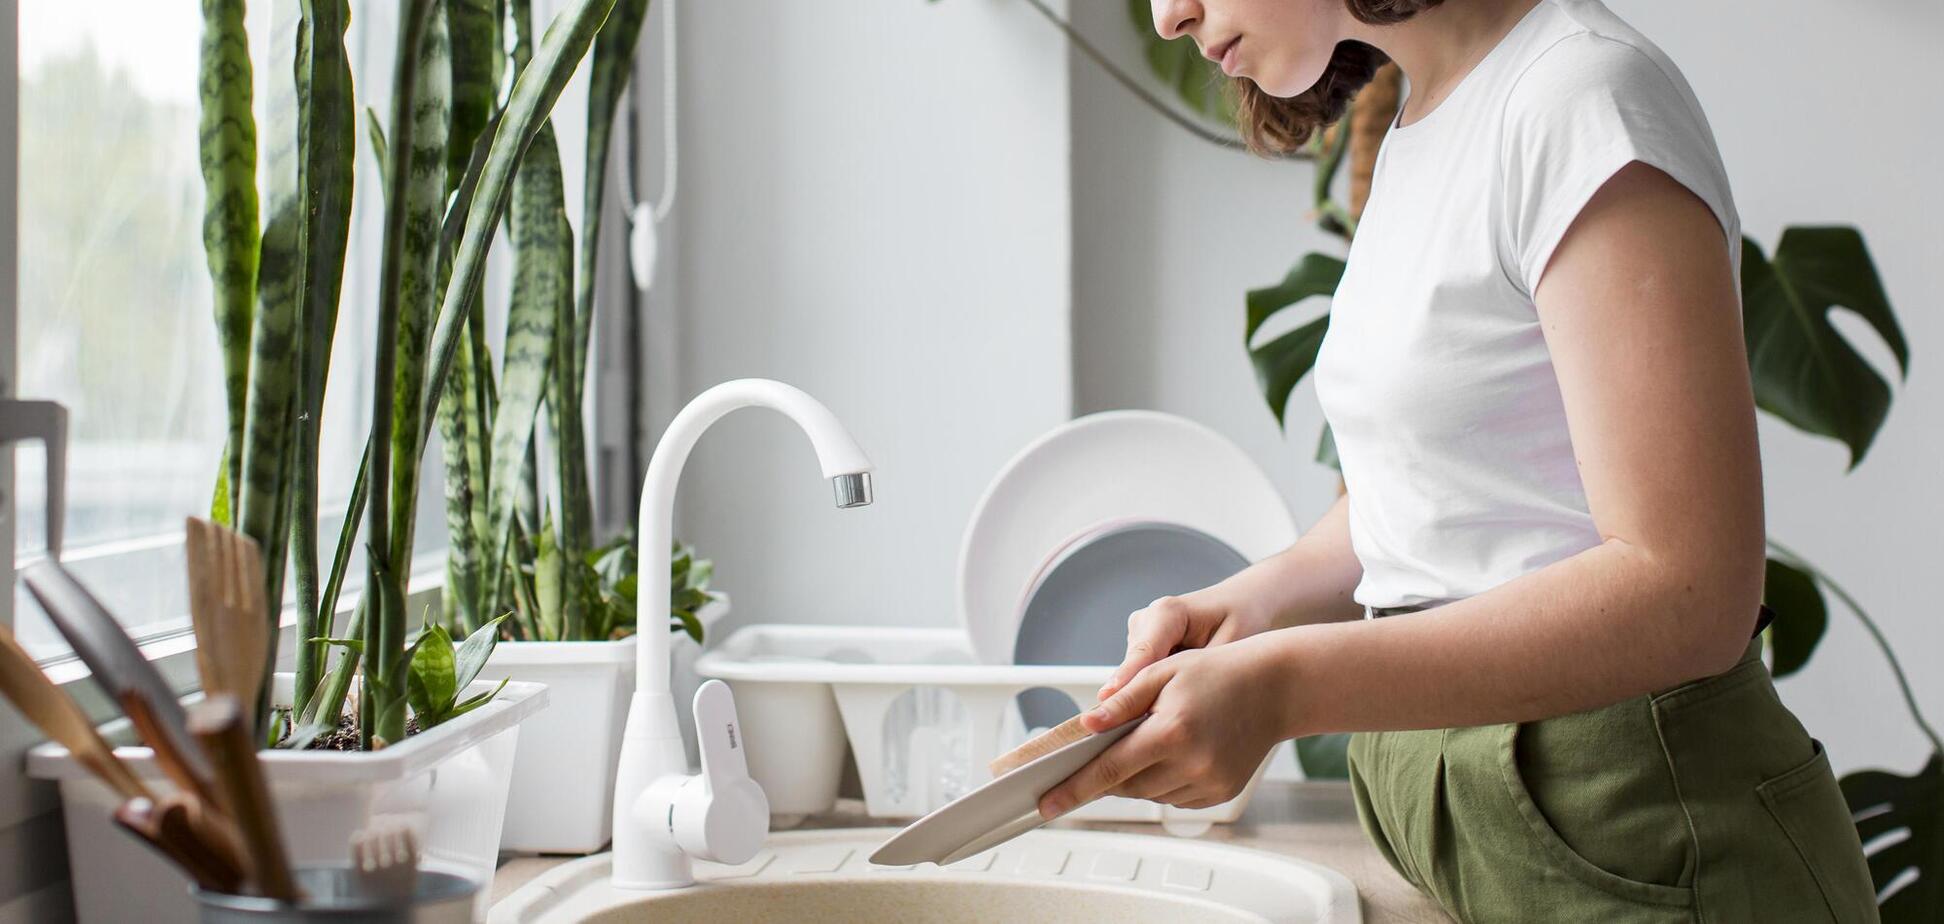 Не только тарелки: что можно мыть дома со средством для мытья посуды